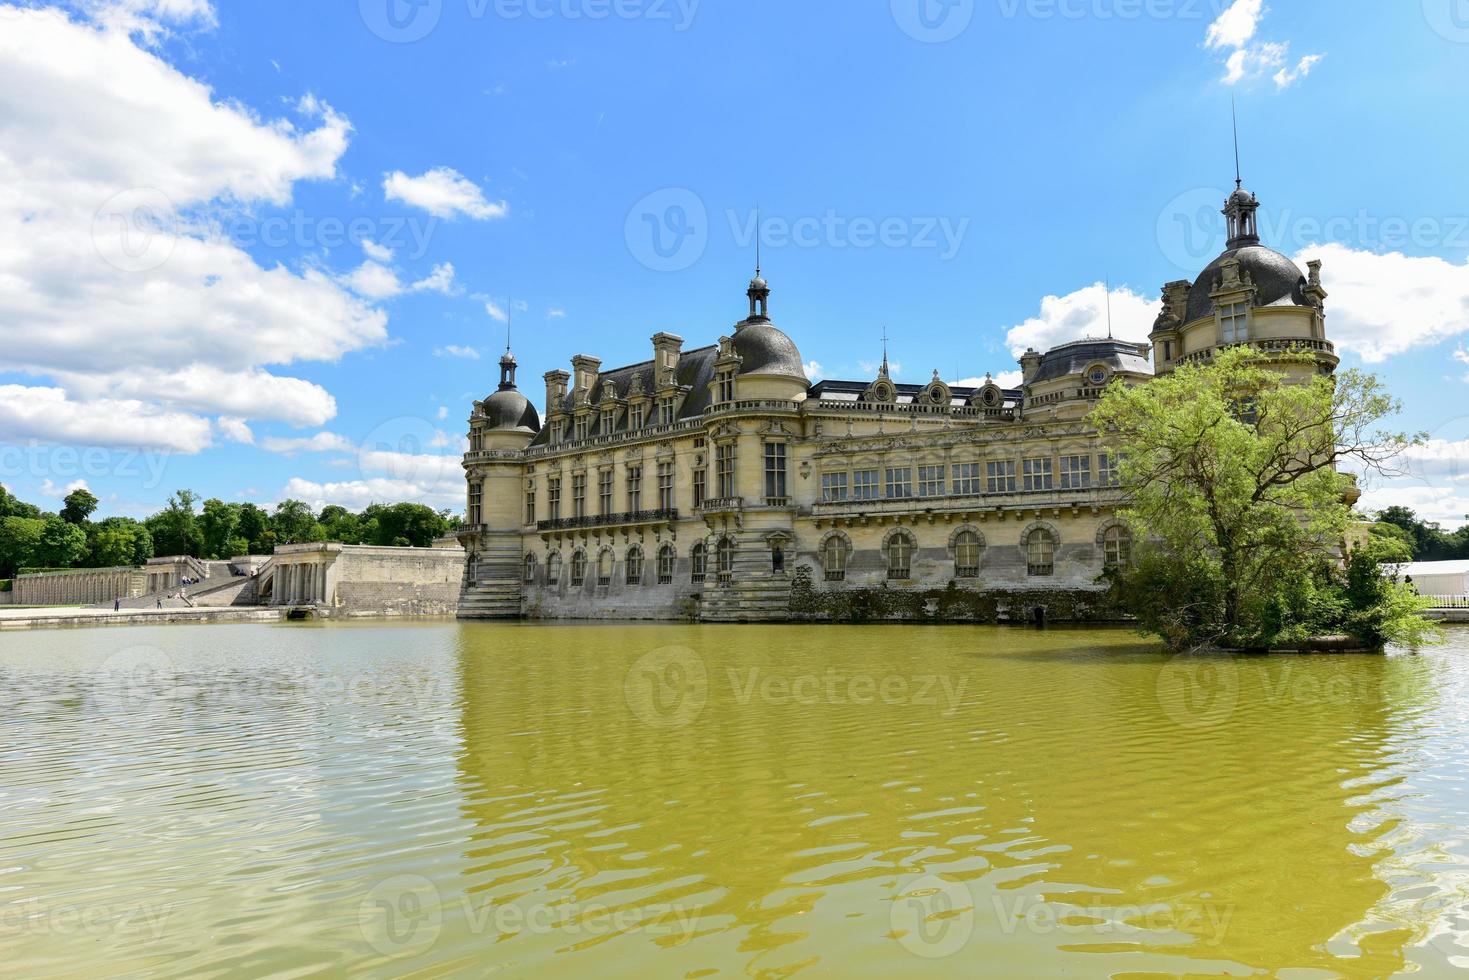 kasteel de chantilly, historisch kasteel gelegen in de stad- van chantilly, Frankrijk. foto